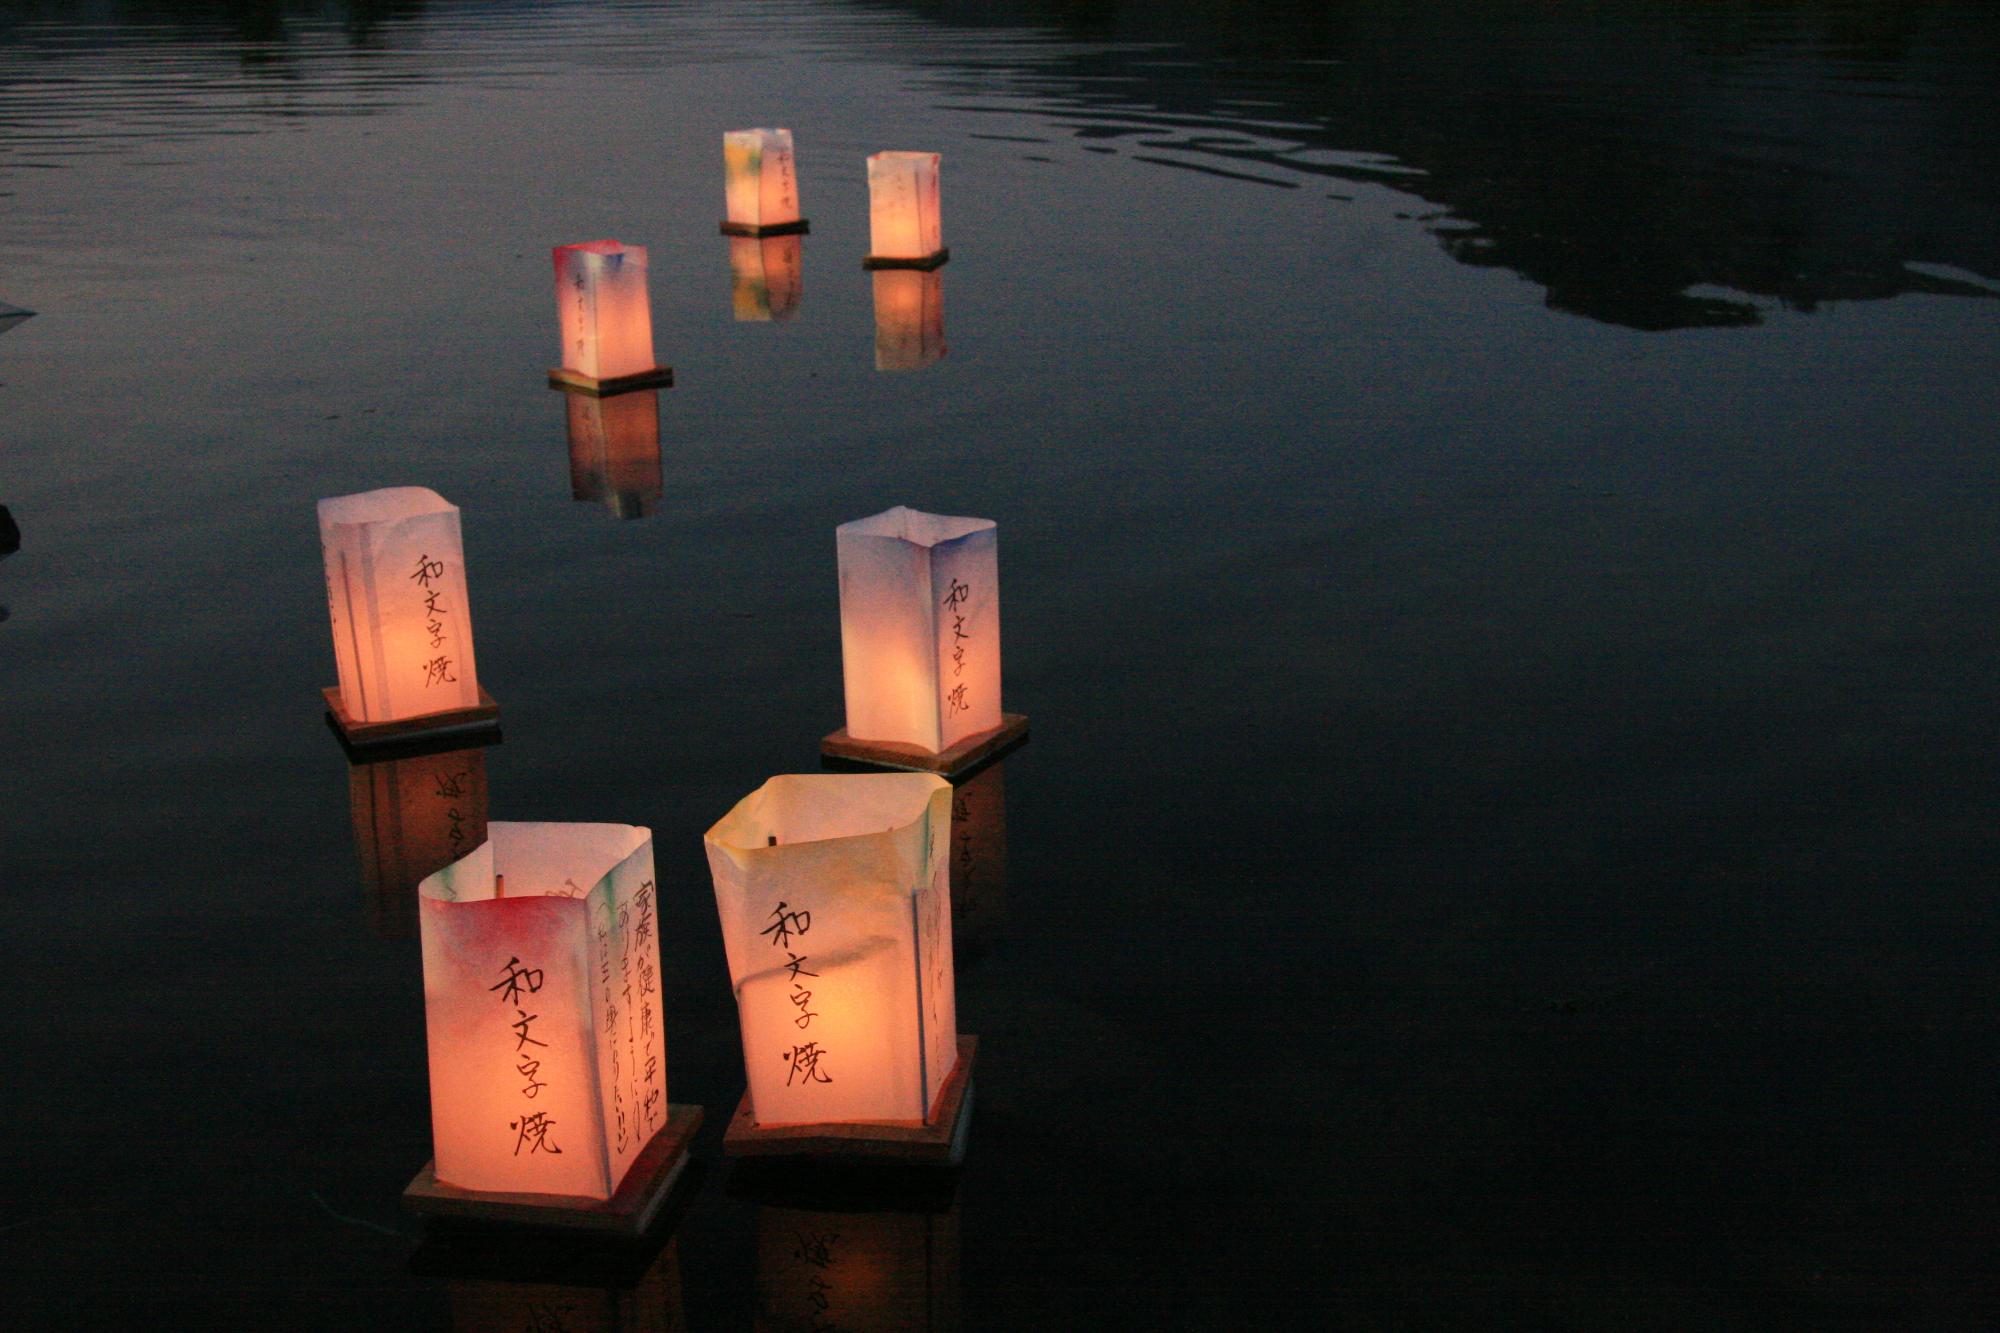 「和文字焼」の文字が書かれた明かりのついた灯ろうが7つ水の上に浮かんでいる写真